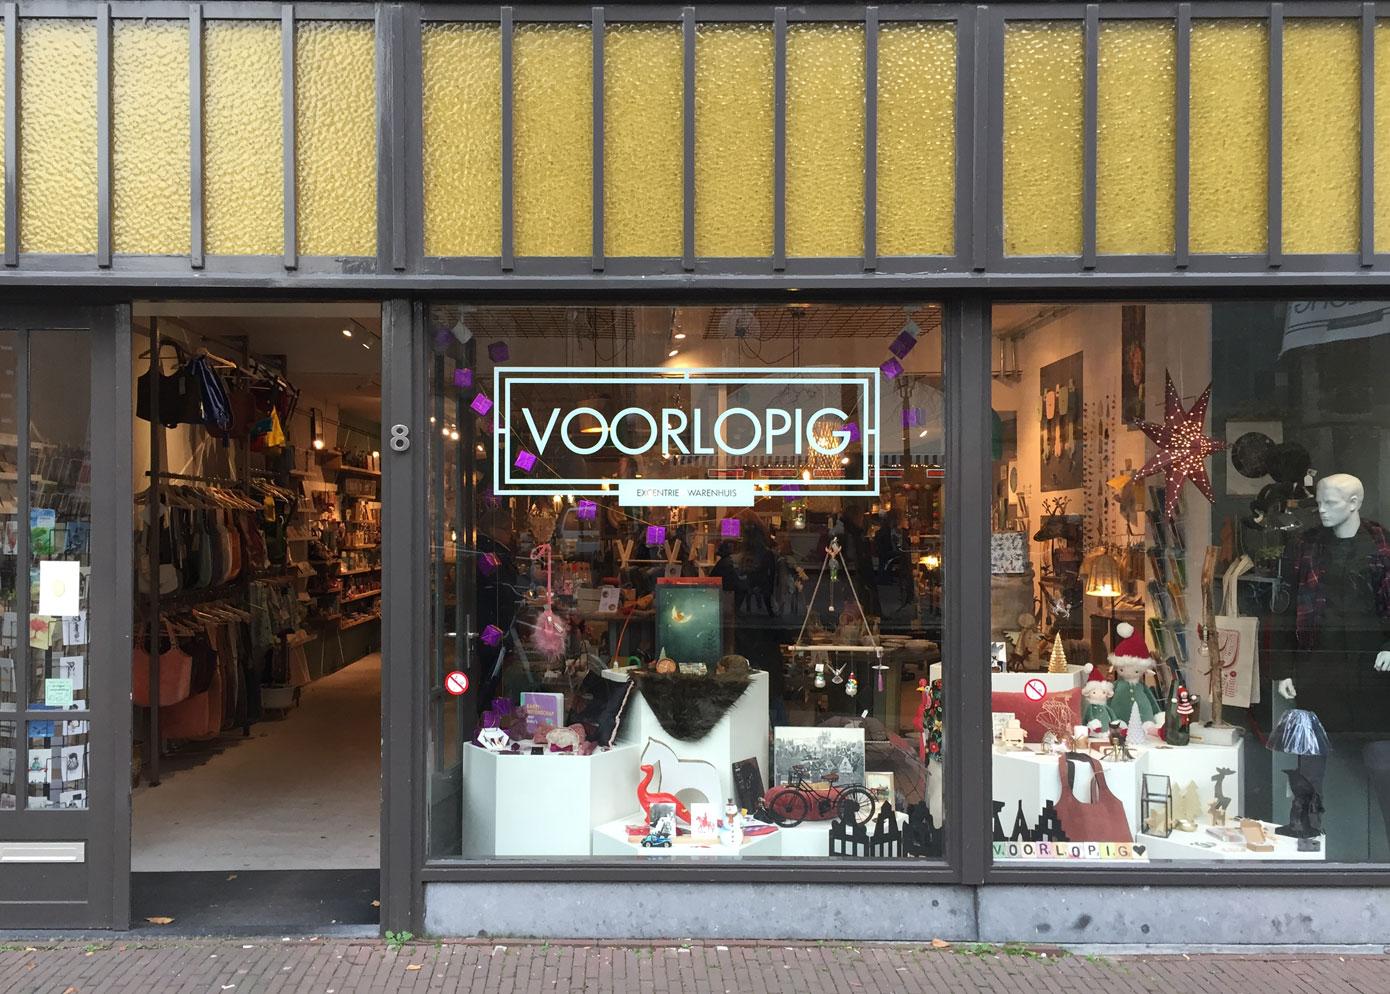 Photo Voorlopig en Delft, Shopping, Cadeaux & présents, Art de vivre et cuisiner - #1